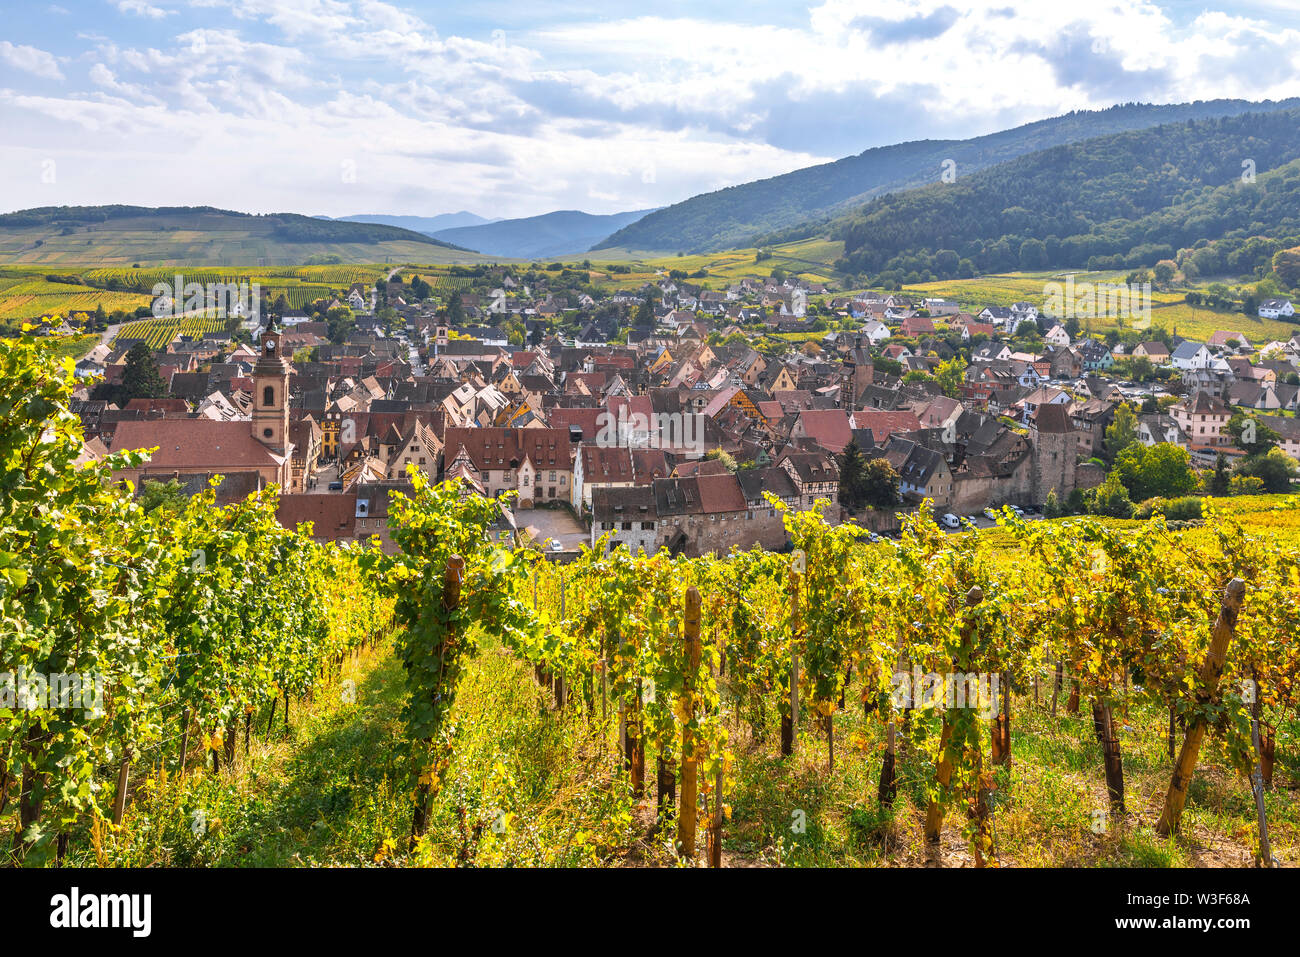 Panorama von weindorf Riquewihr, Alsace, France, das Dorf und die Hügel mit Weinbergen von oben gesehen Stockfoto